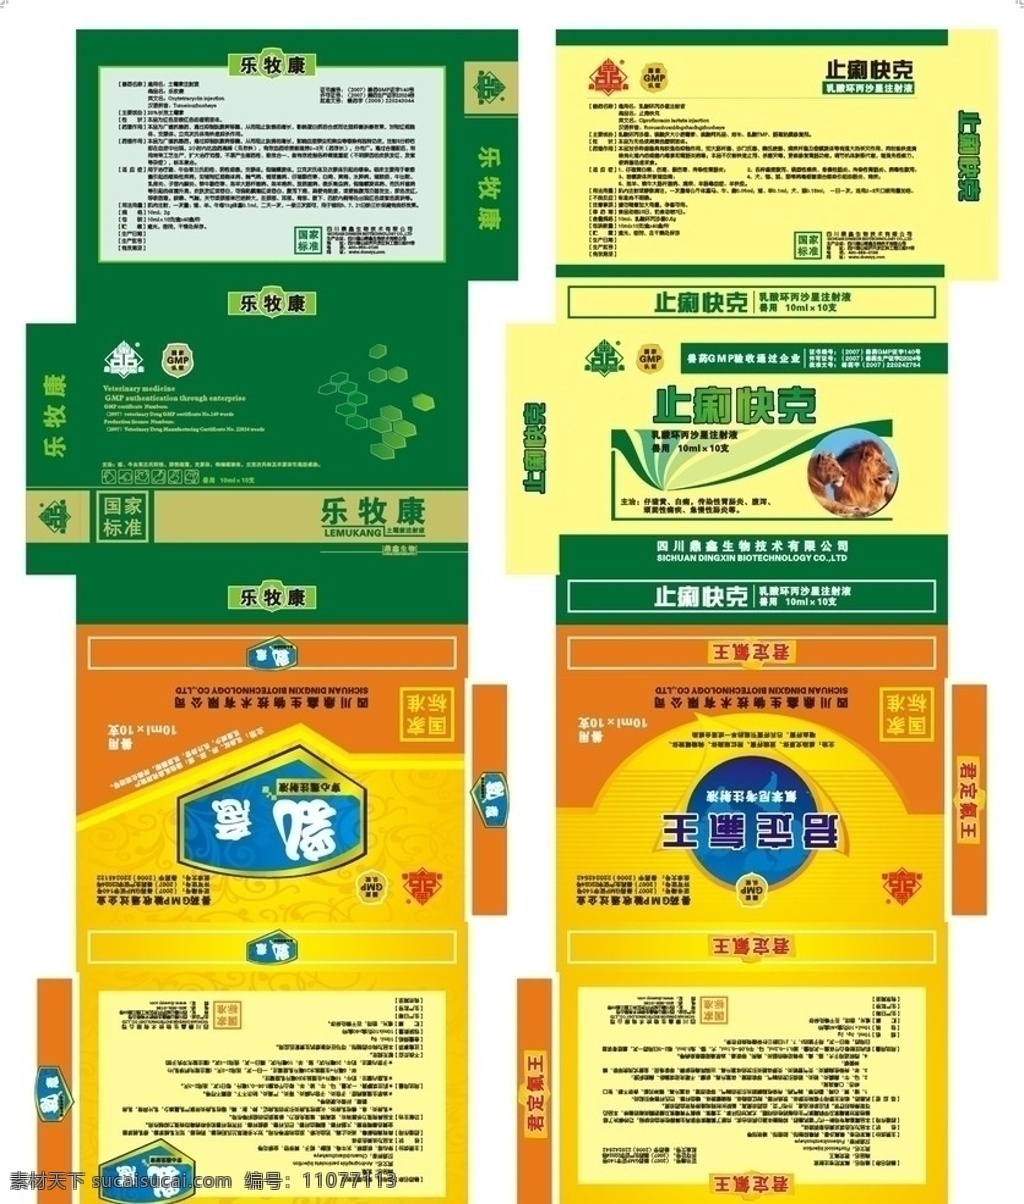 兽药标签 兽药 标签 包装 说明书 产品 药品 医药 包装设计 矢量